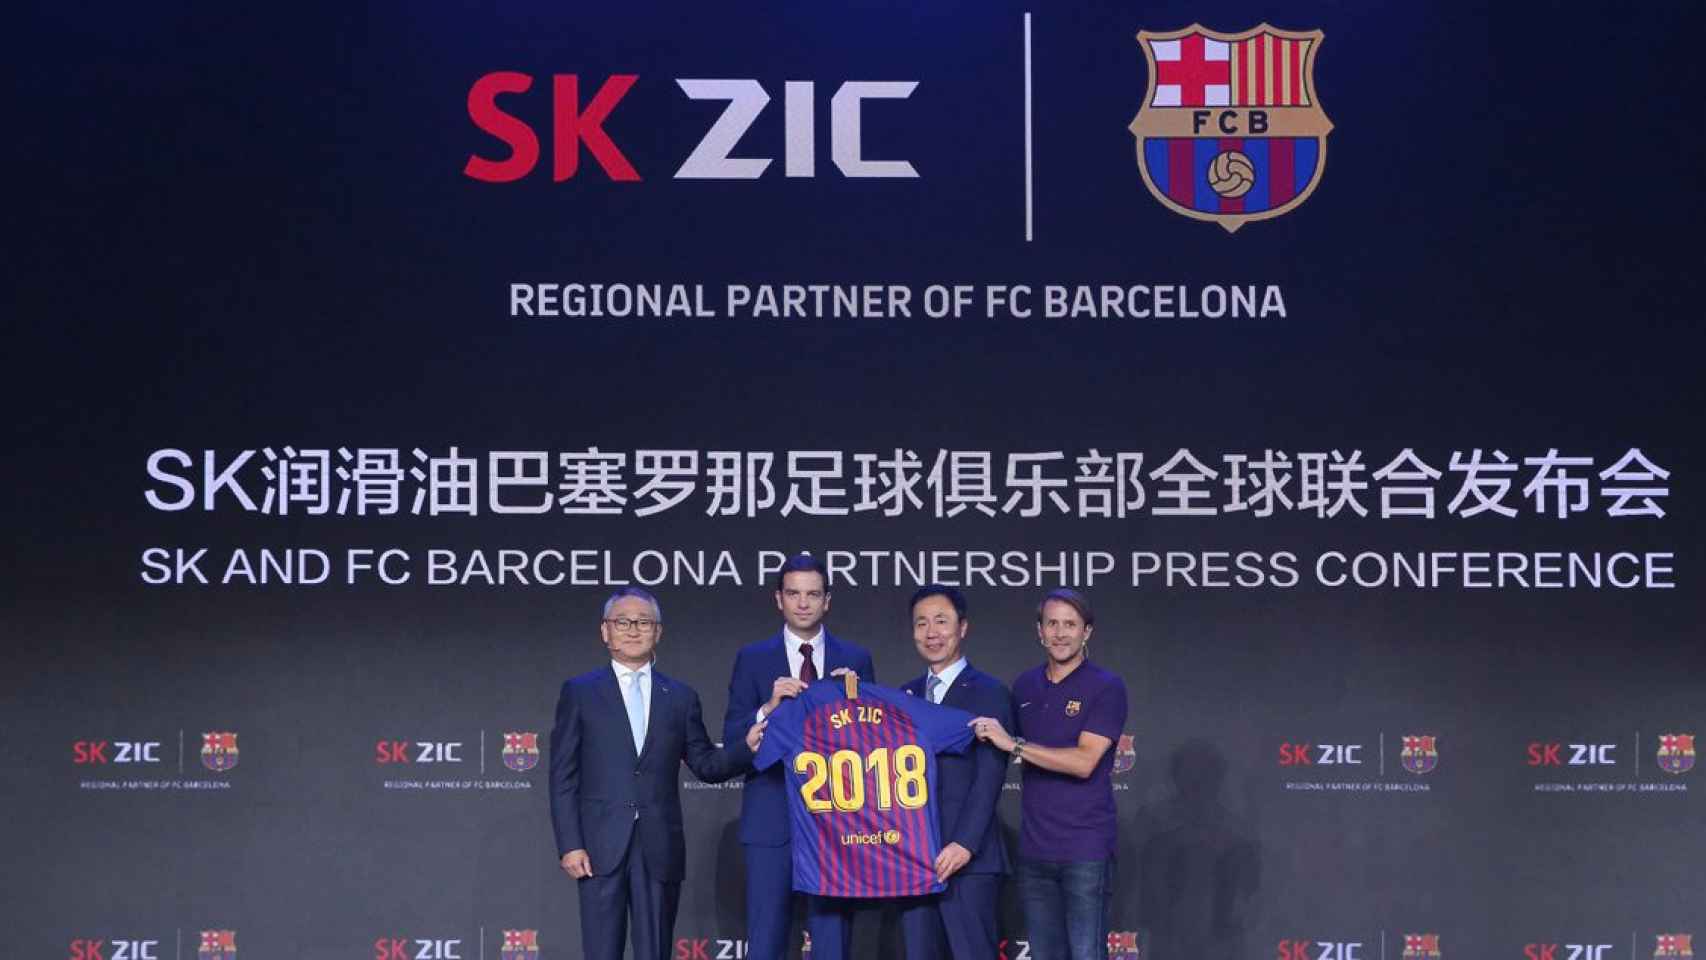 El Barça renueva su alianza con SK Lubricants / FCB